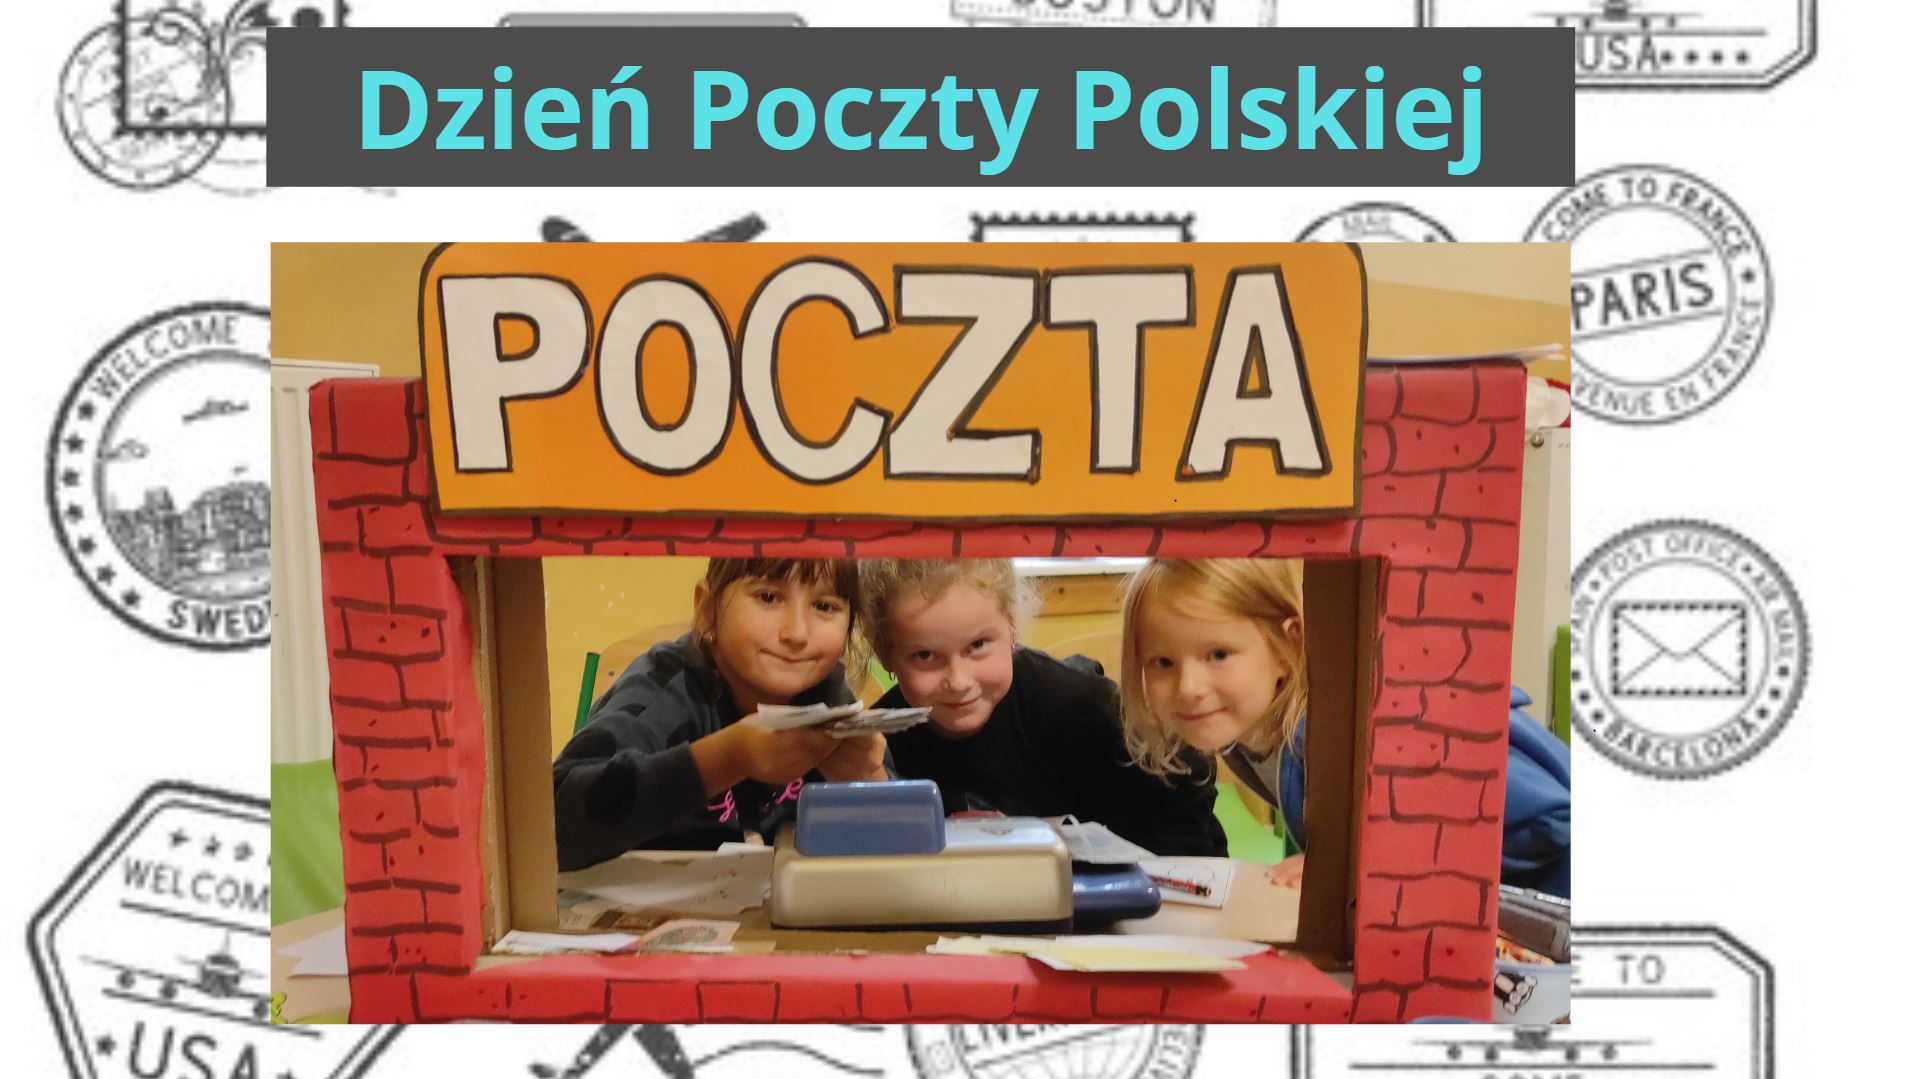 You are currently viewing Dzień Poczty Polskiej